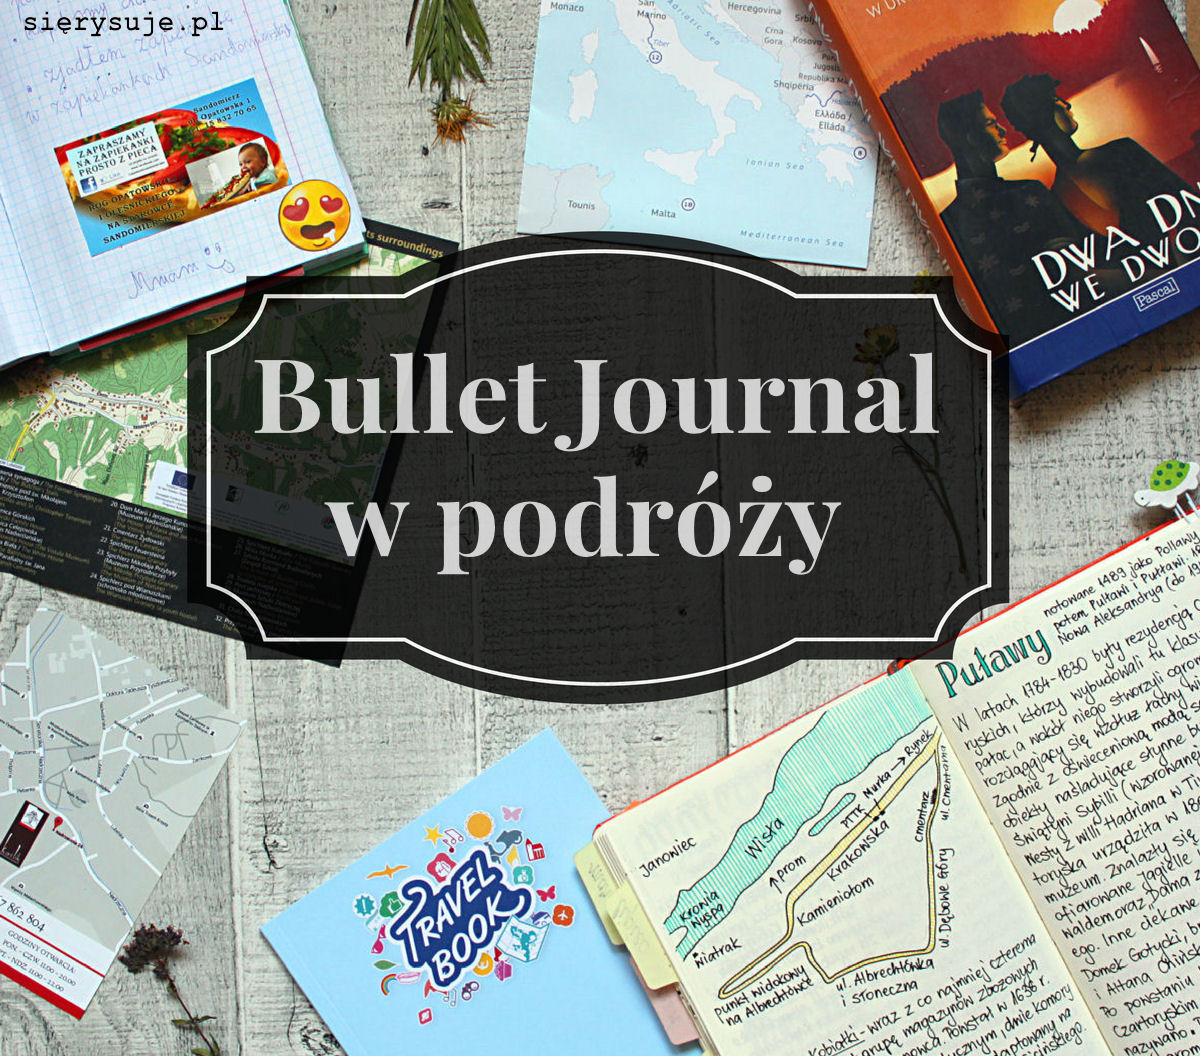 sierysuje.pl bullet journal podróż wakacje